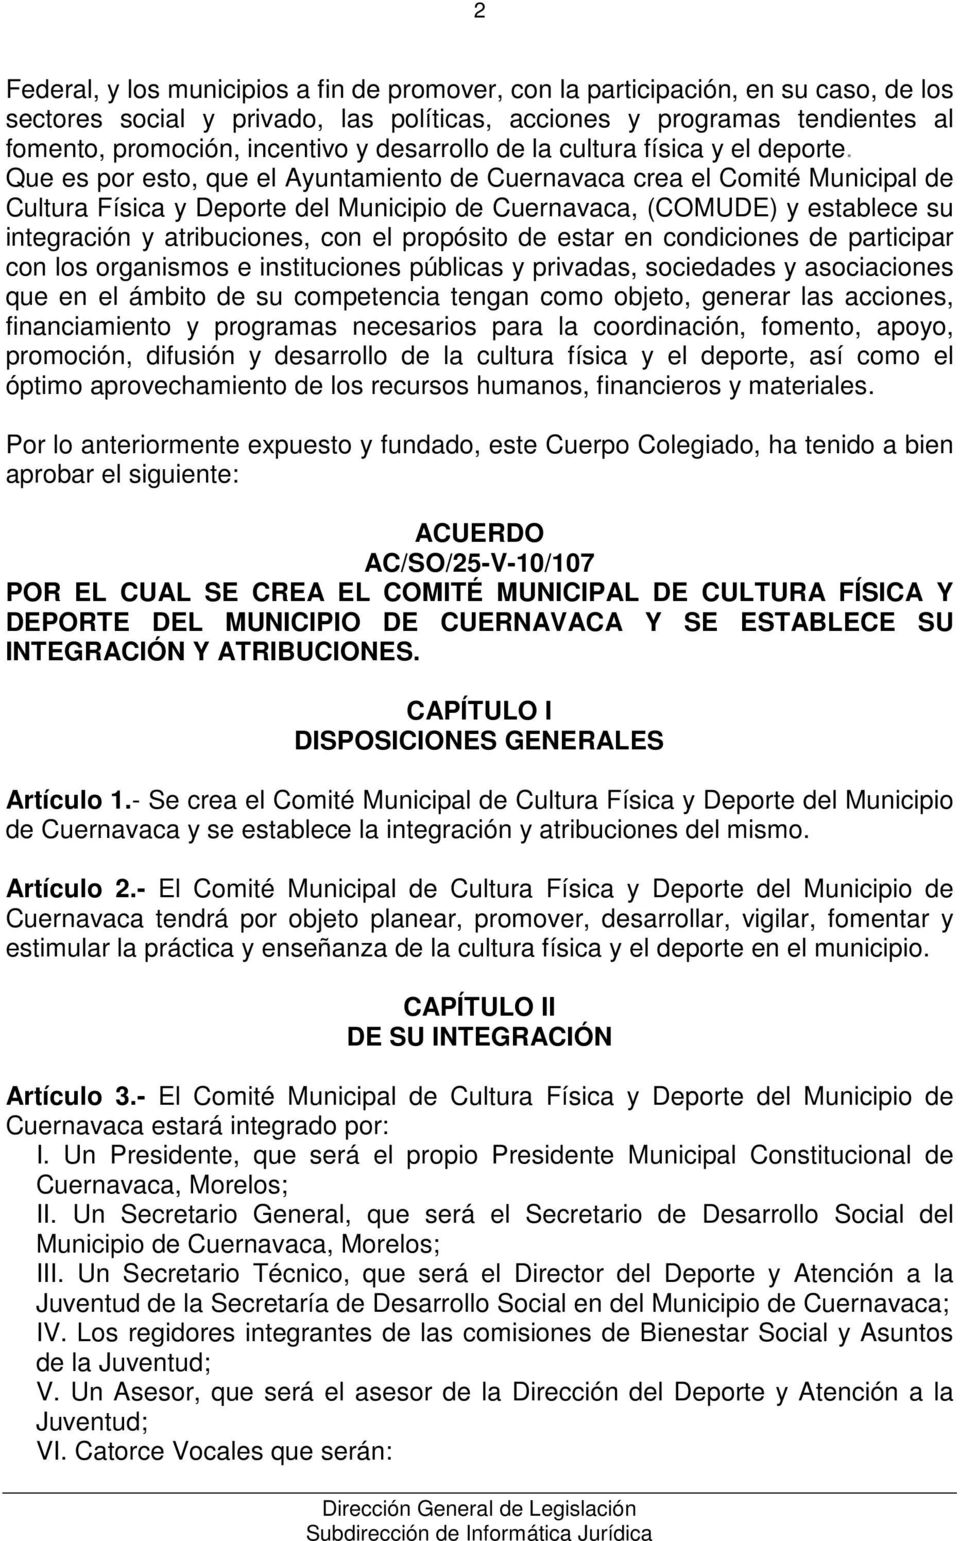 Que es por esto, que el Ayuntamiento de Cuernavaca crea el Comité Municipal de Cultura Física y Deporte del Municipio de Cuernavaca, (COMUDE) y establece su integración y atribuciones, con el